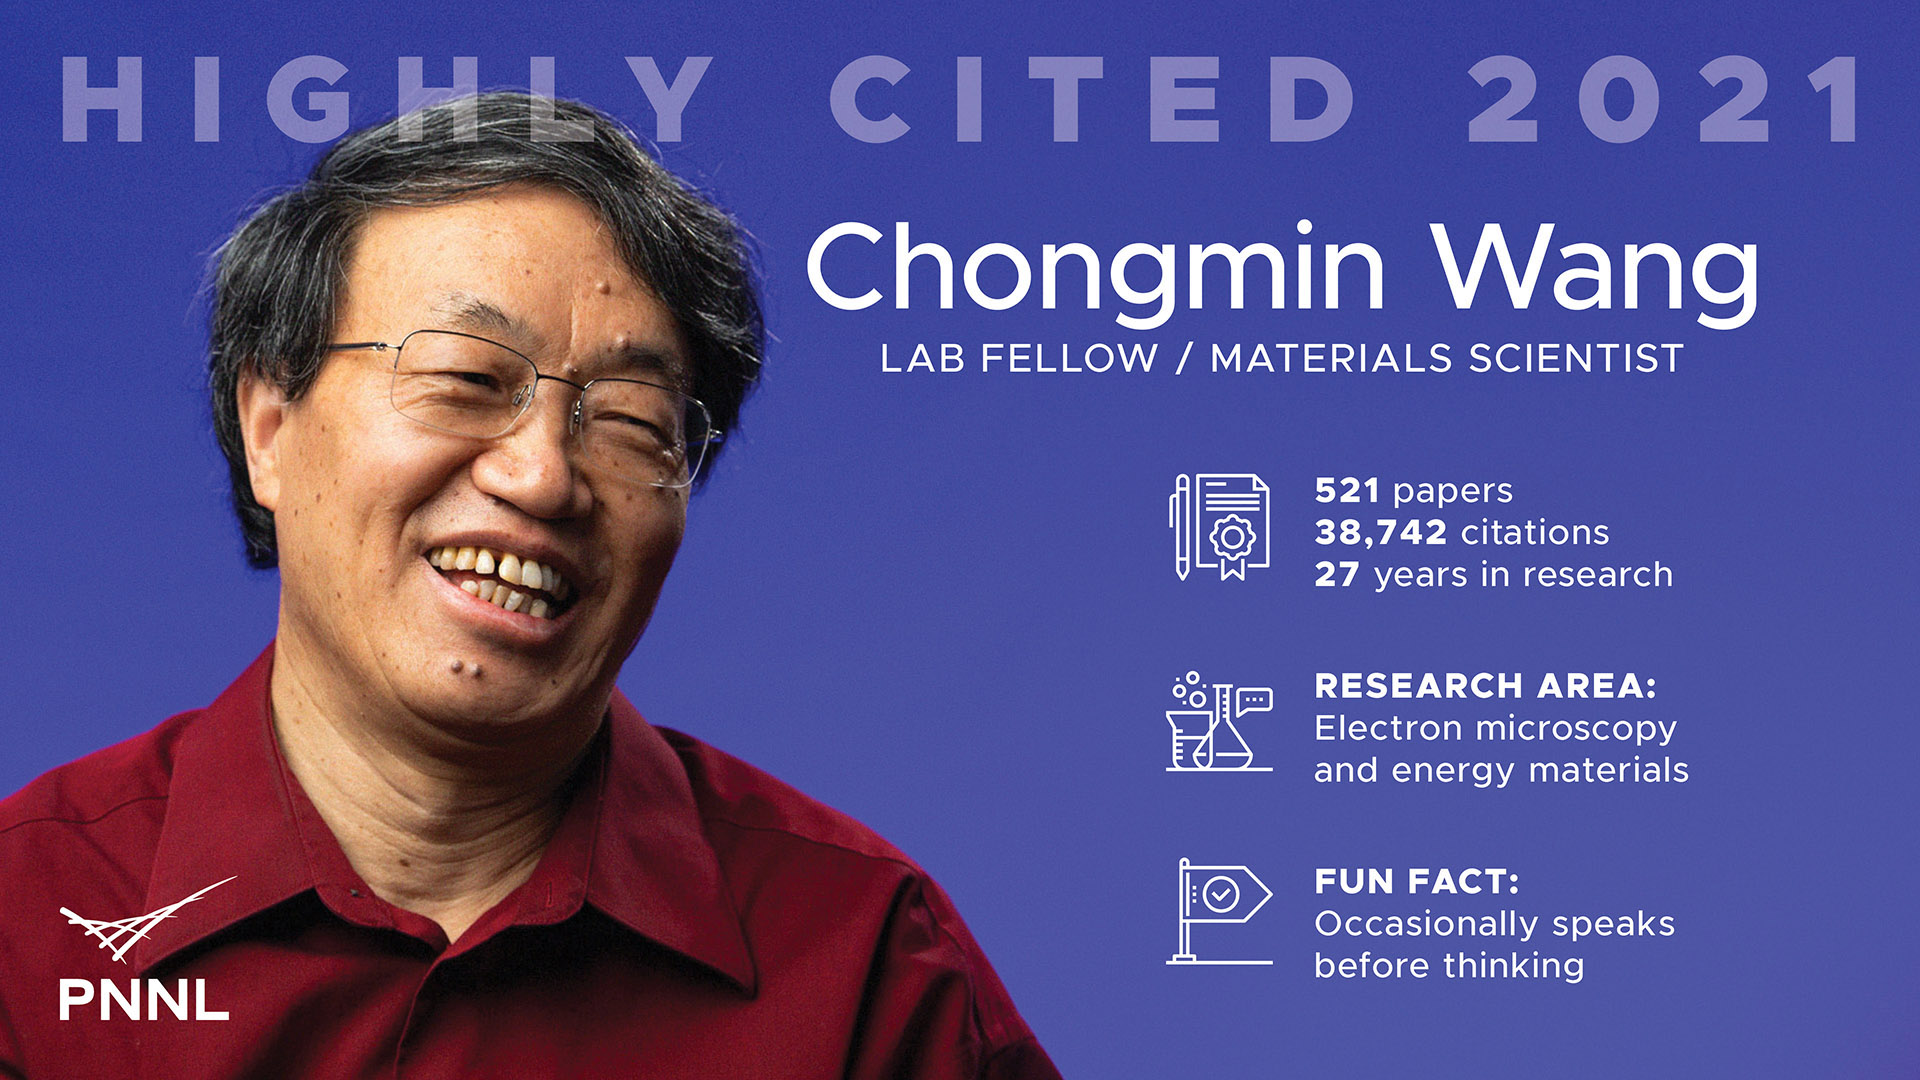 Chongmin Wang Highly Cited 2021 Fact Card